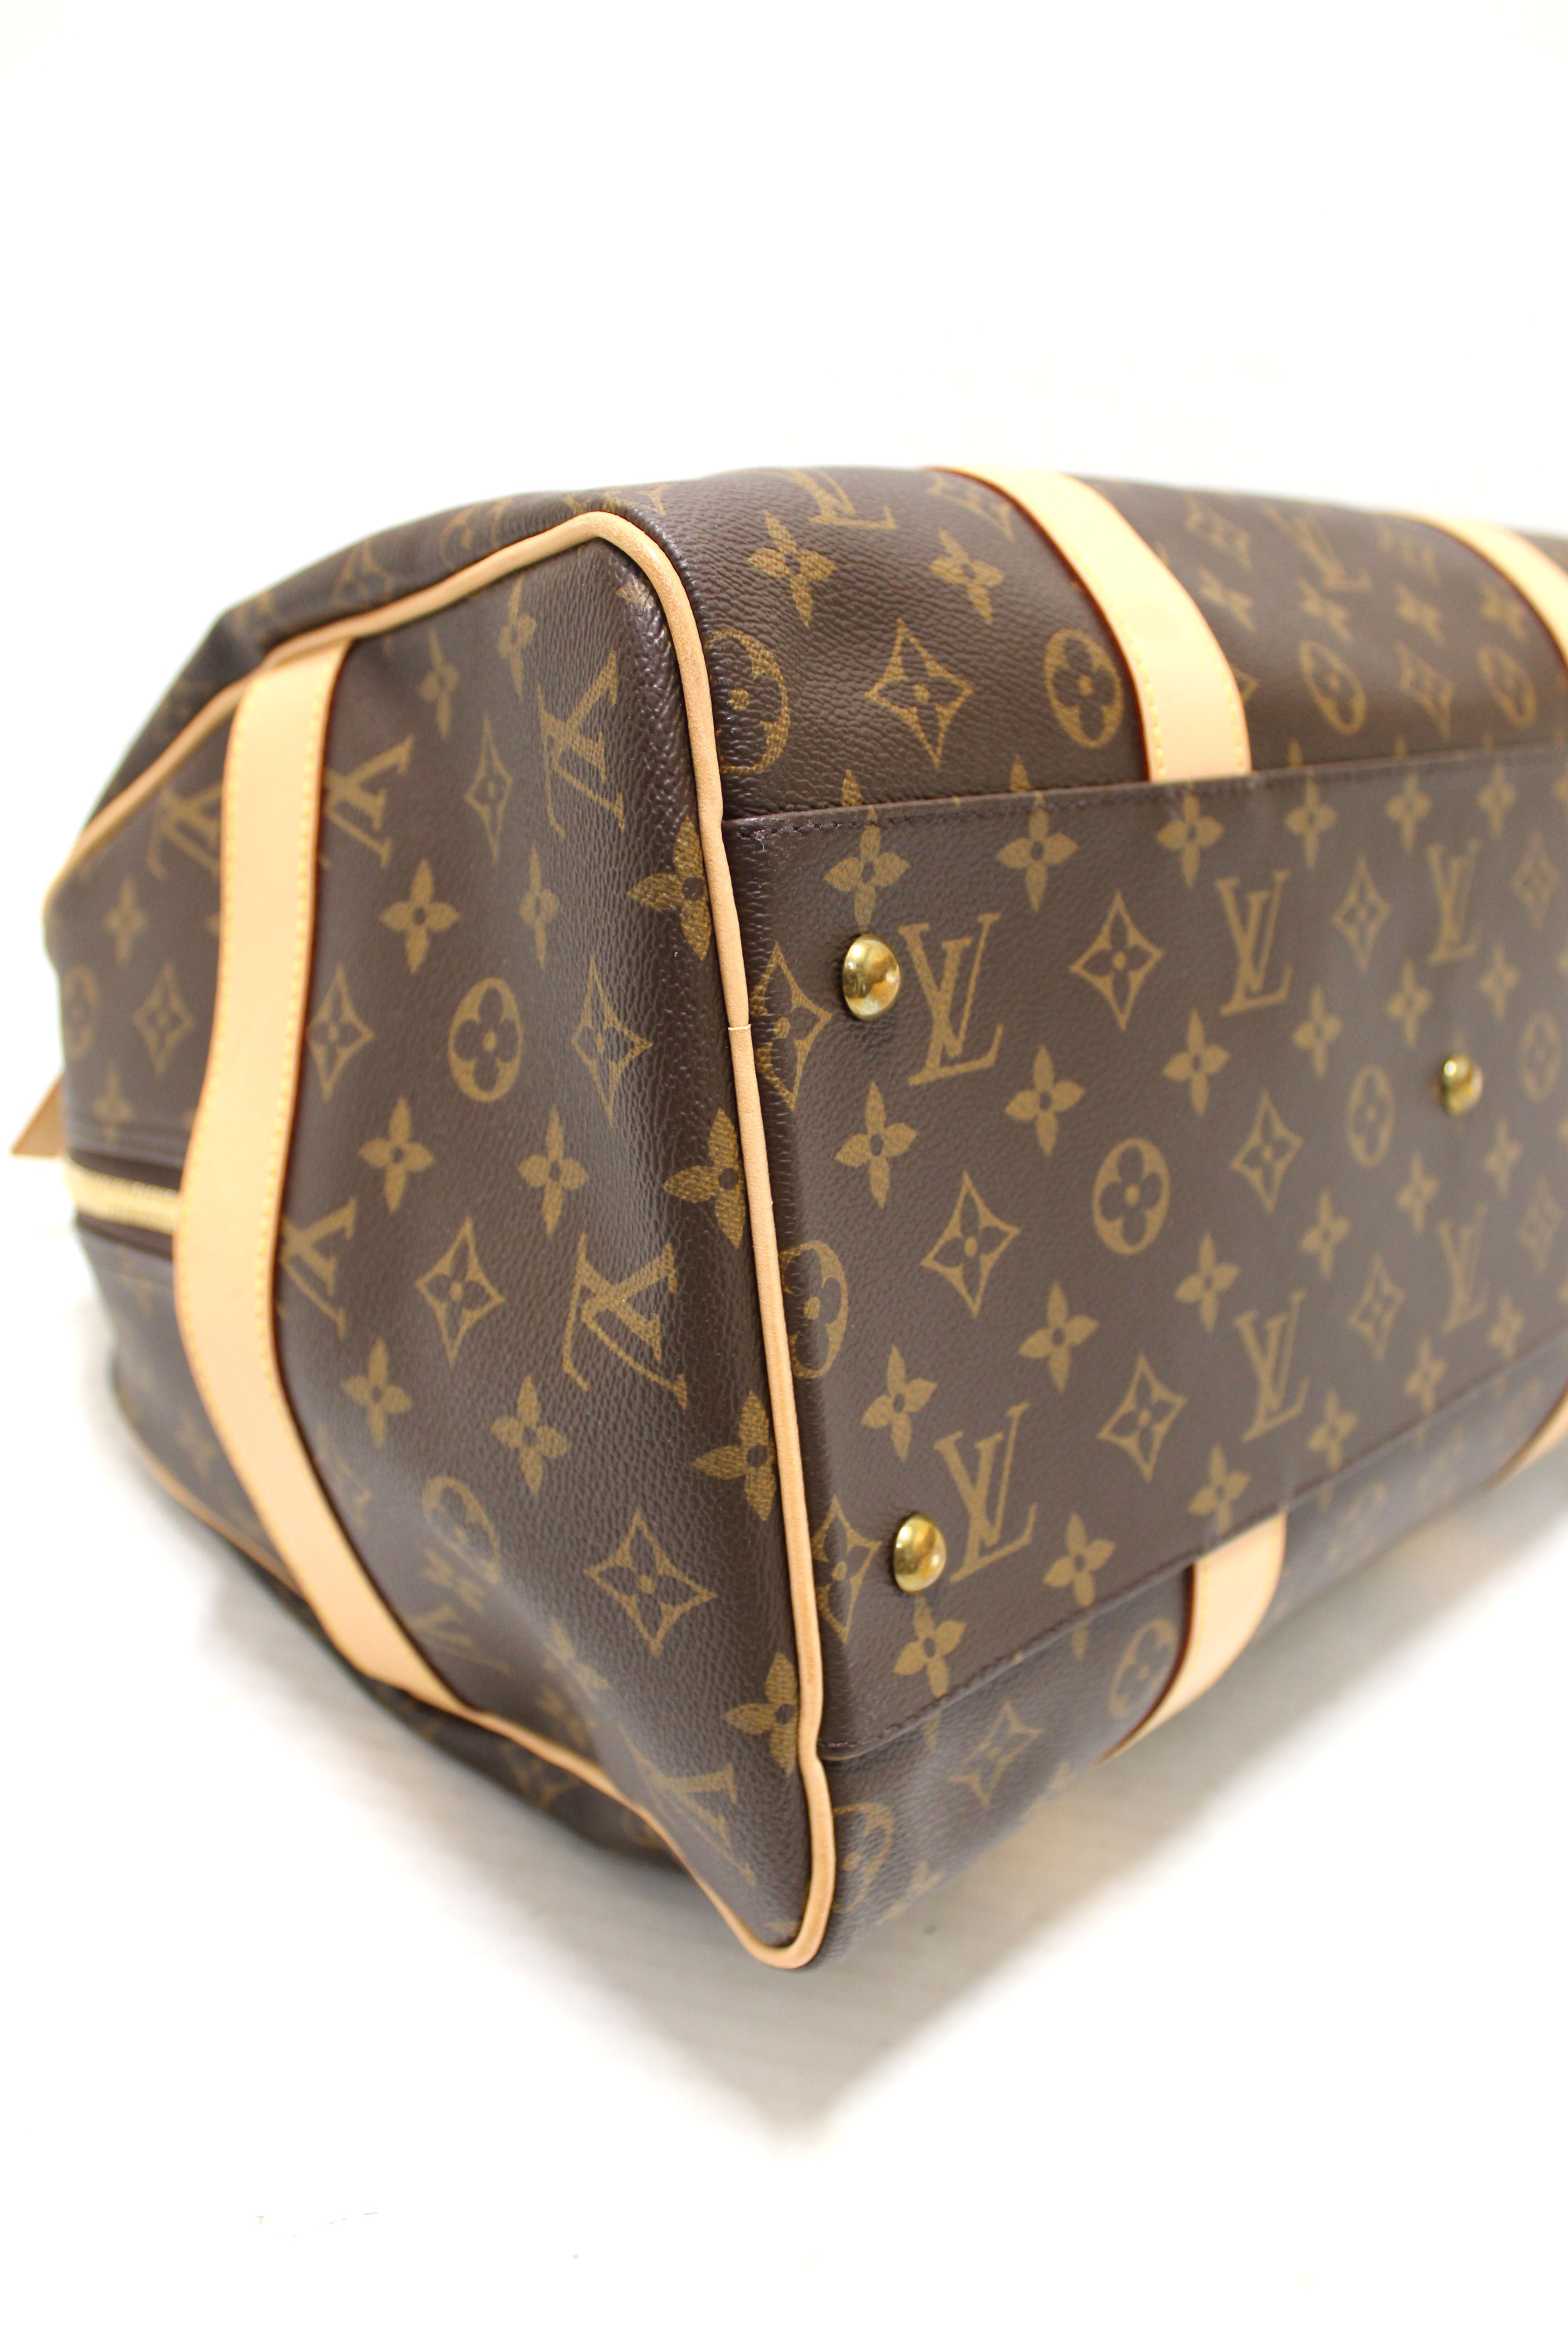 Authentic Louis Vuitton Monogram Canvas Carryall Duffle Travel Bag